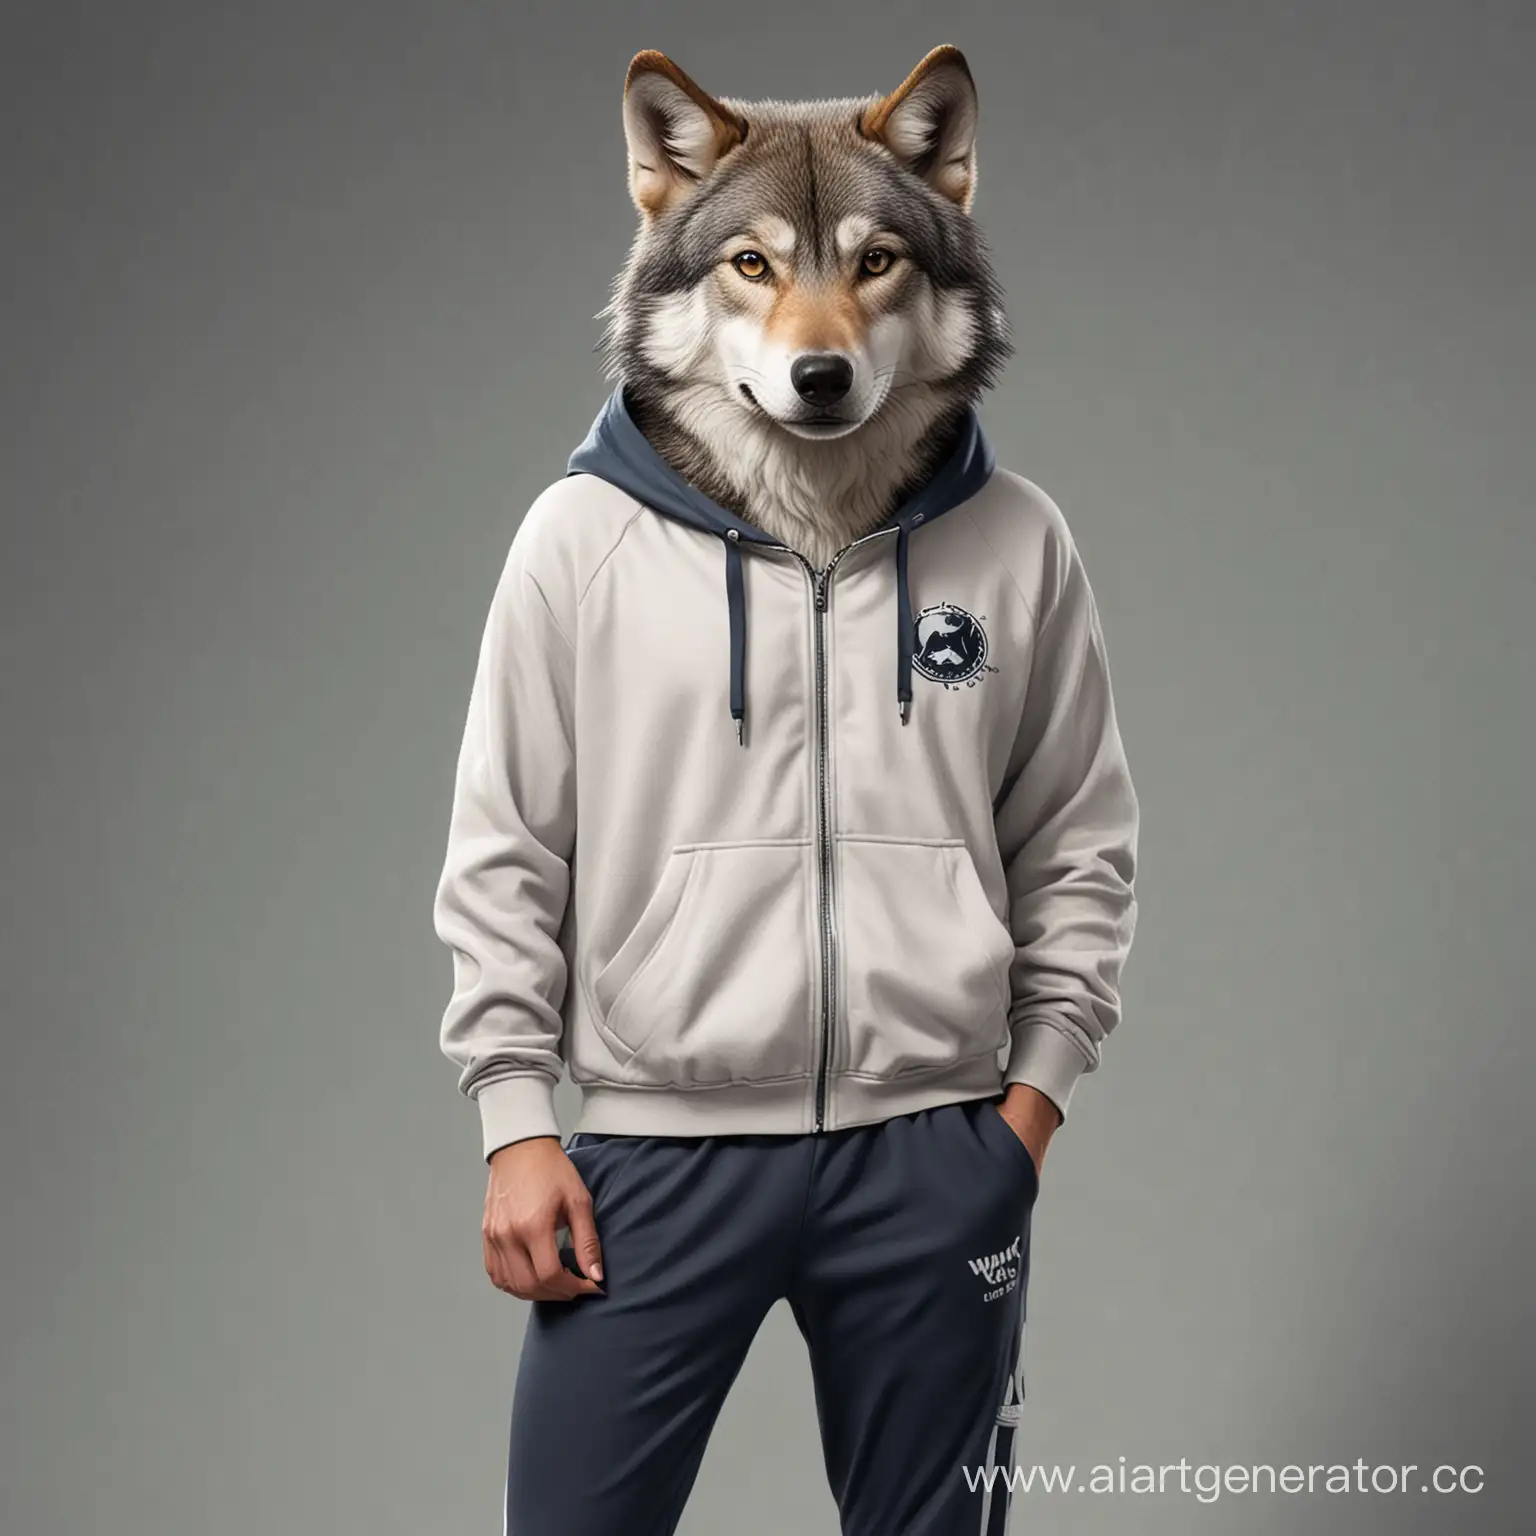 Wolf-Athlete-in-Dynamic-Sportswear